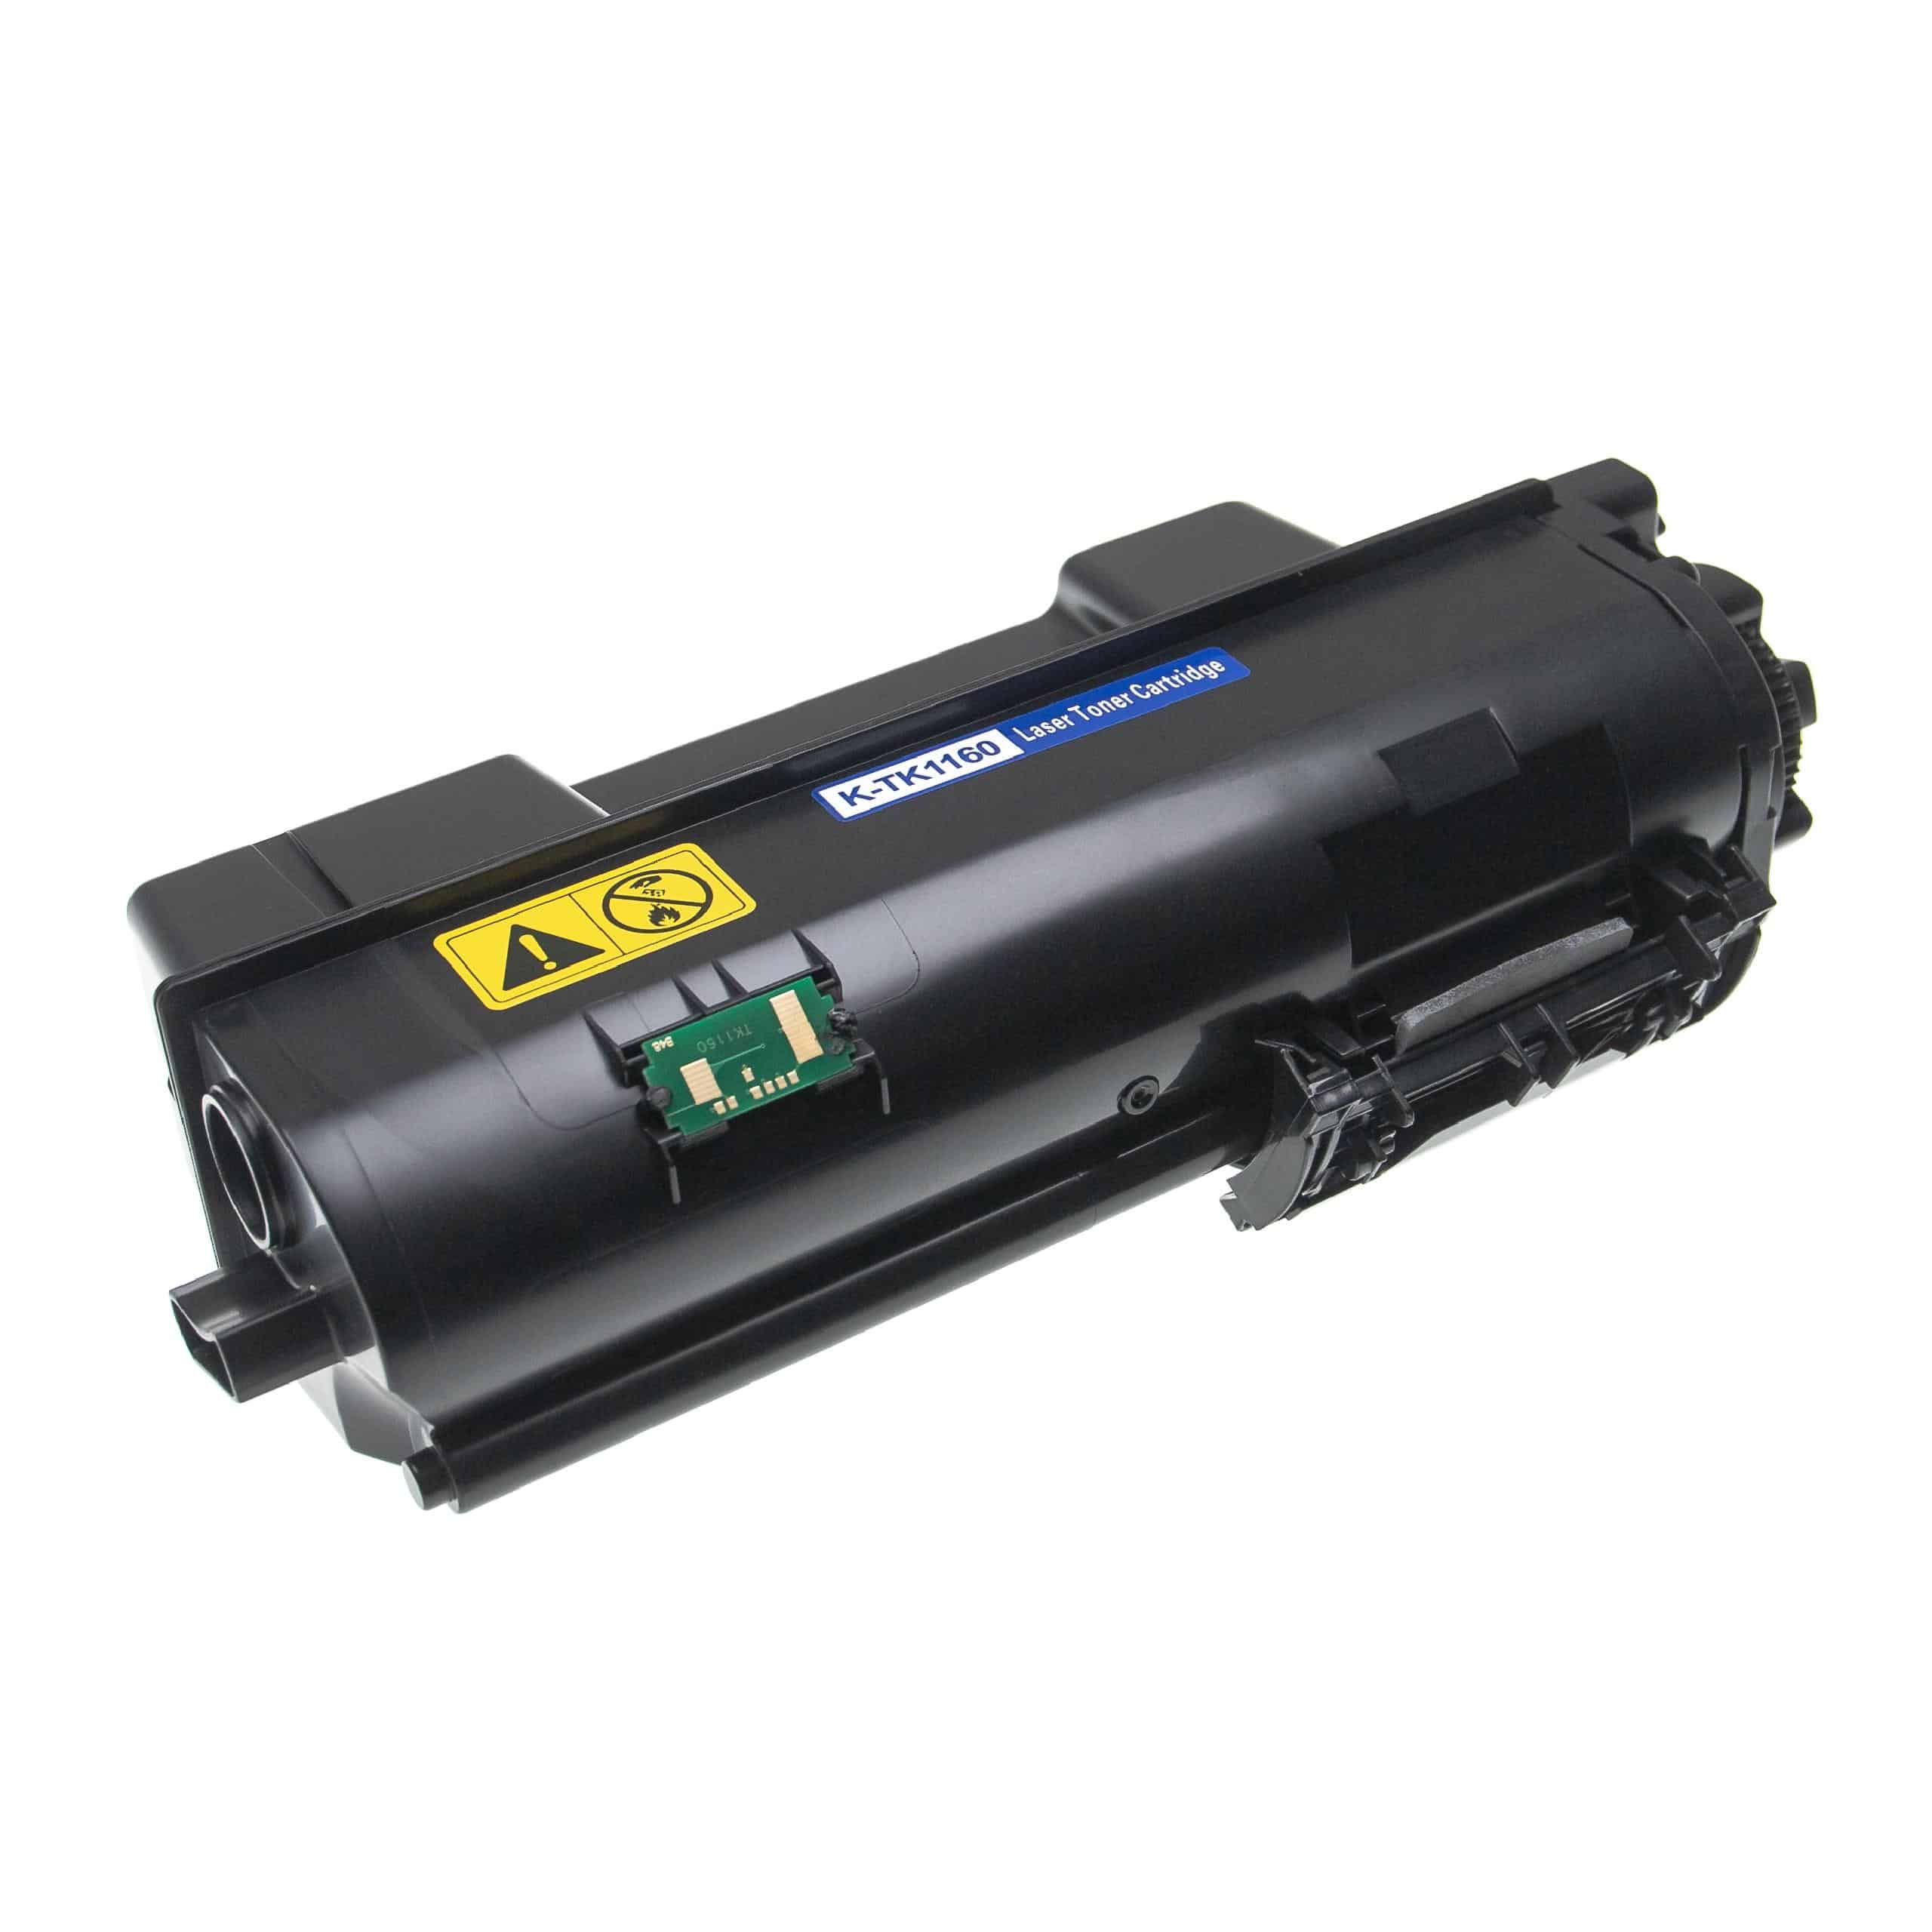 3x Cartouches de toner remplace Kyocera TK-1160 pour imprimante laser Kyocera, noir